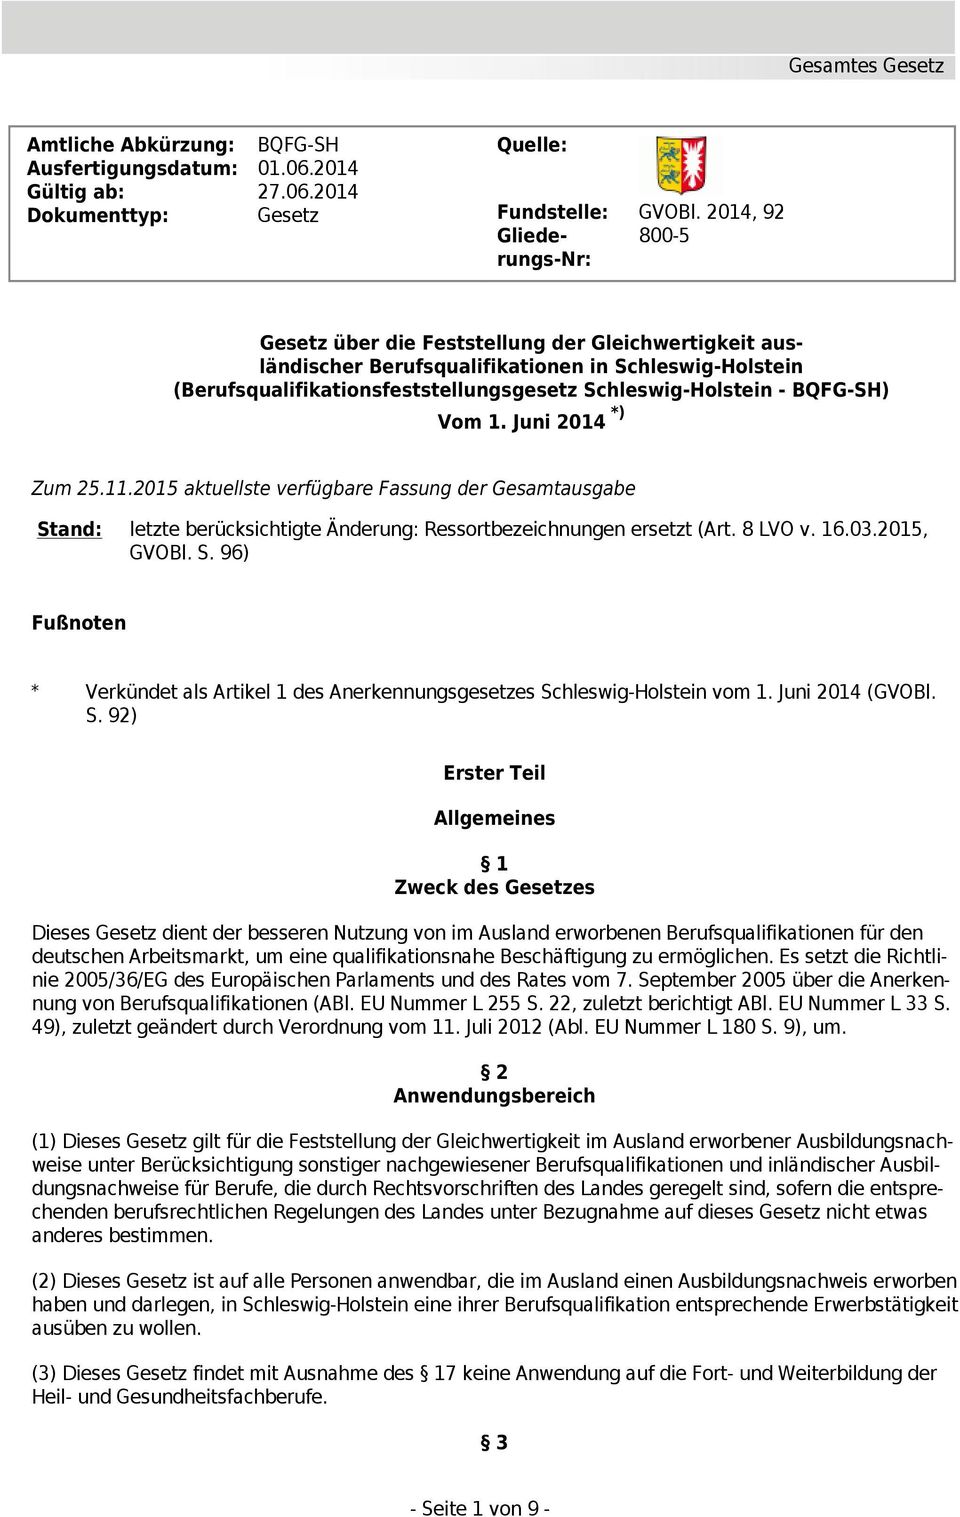 - BQFG-SH) Vom 1. Juni 2014 *) Zum 25.11.2015 aktuellste verfügbare Fassung der Gesamtausgabe Stand: letzte berücksichtigte Änderung: Ressortbezeichnungen ersetzt (Art. 8 LVO v. 16.03.2015, GVOBl. S. 96) Fußnoten * Verkündet als Artikel 1 des Anerkennungsgesetzes Schleswig-Holstein vom 1.